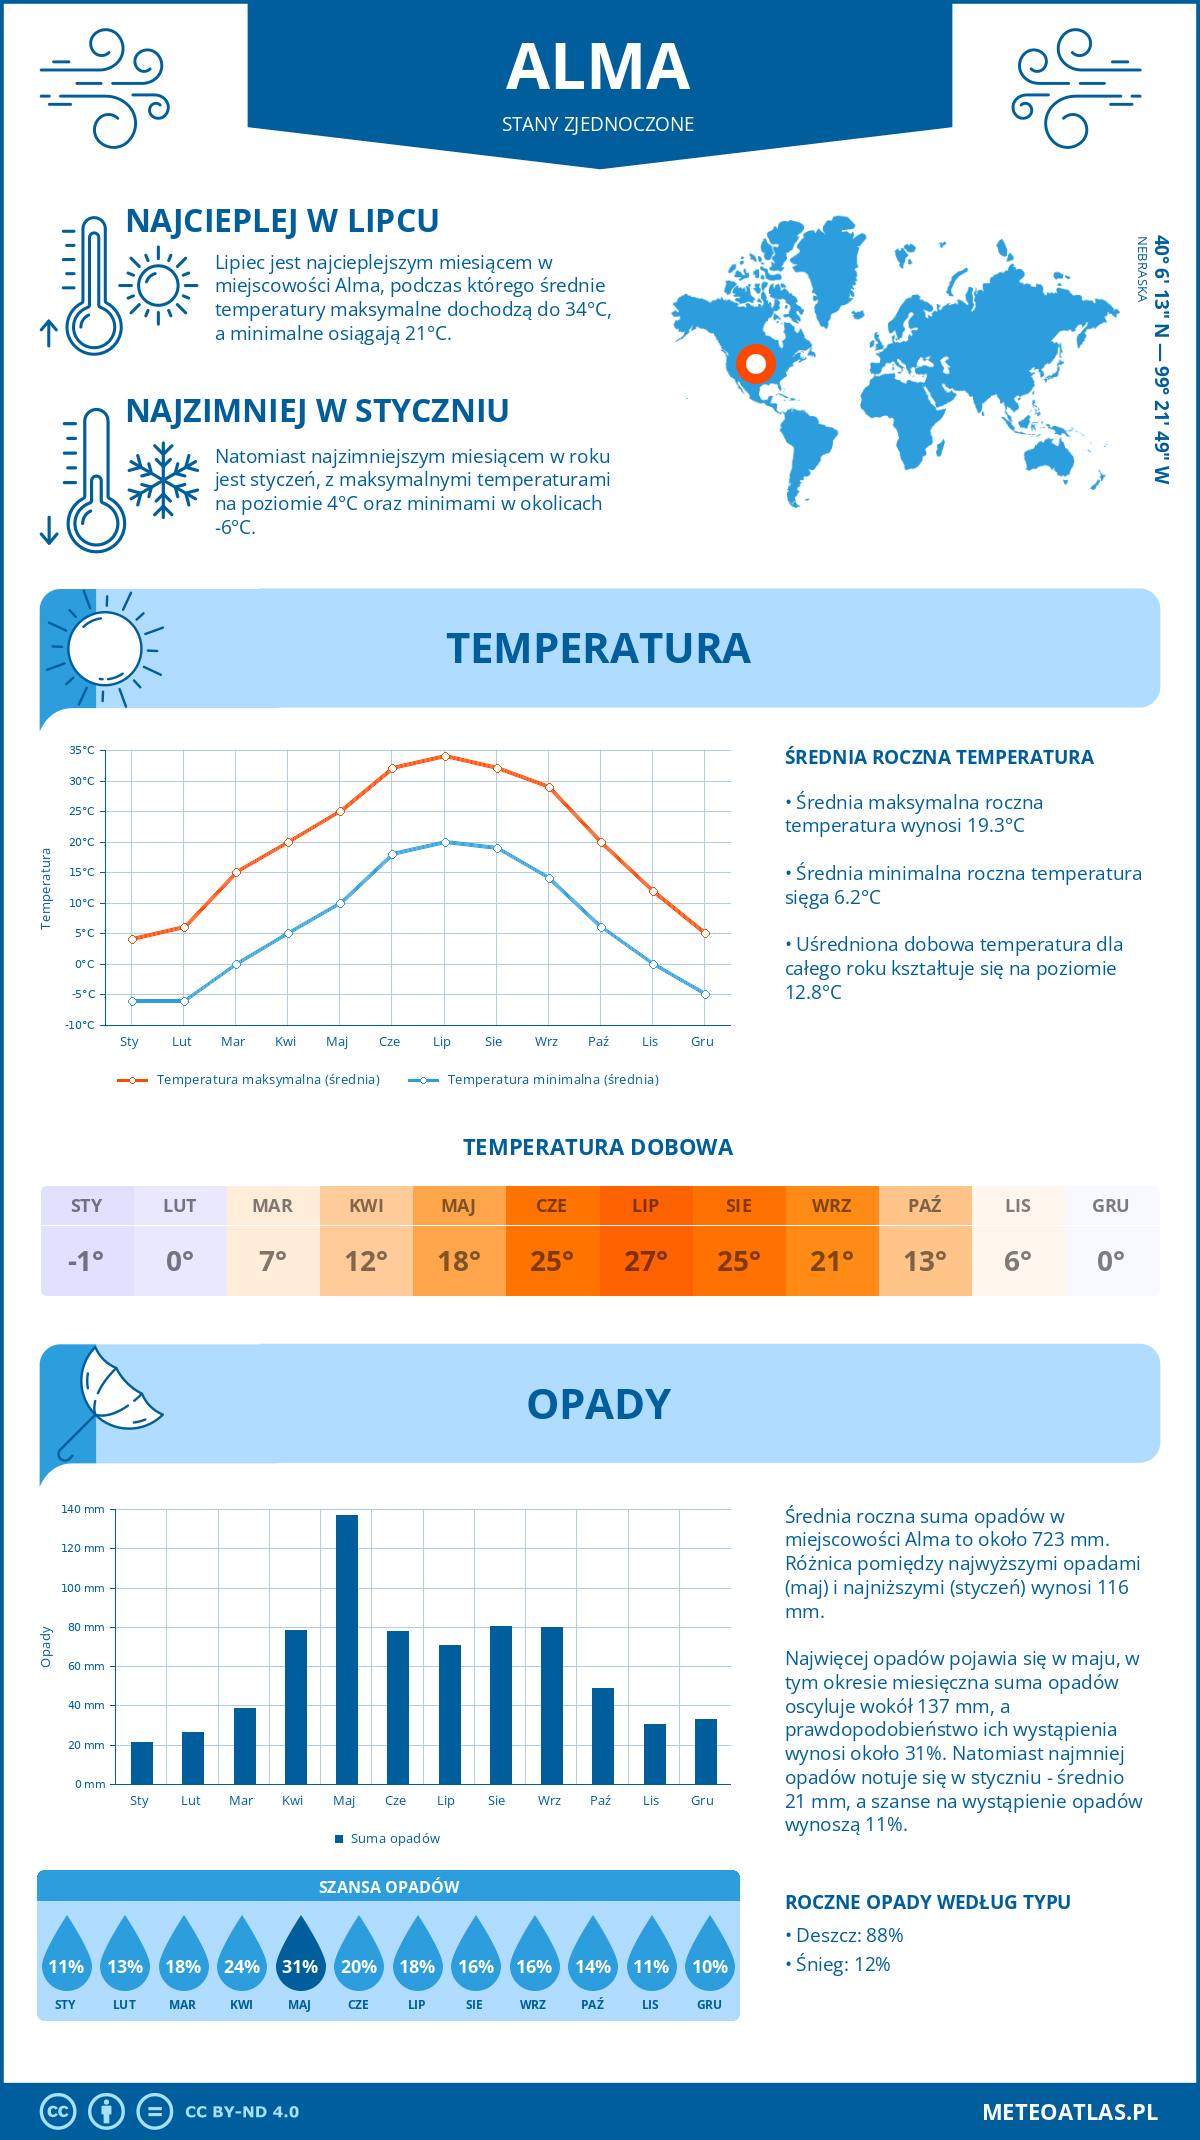 Pogoda Alma (Stany Zjednoczone). Temperatura oraz opady.